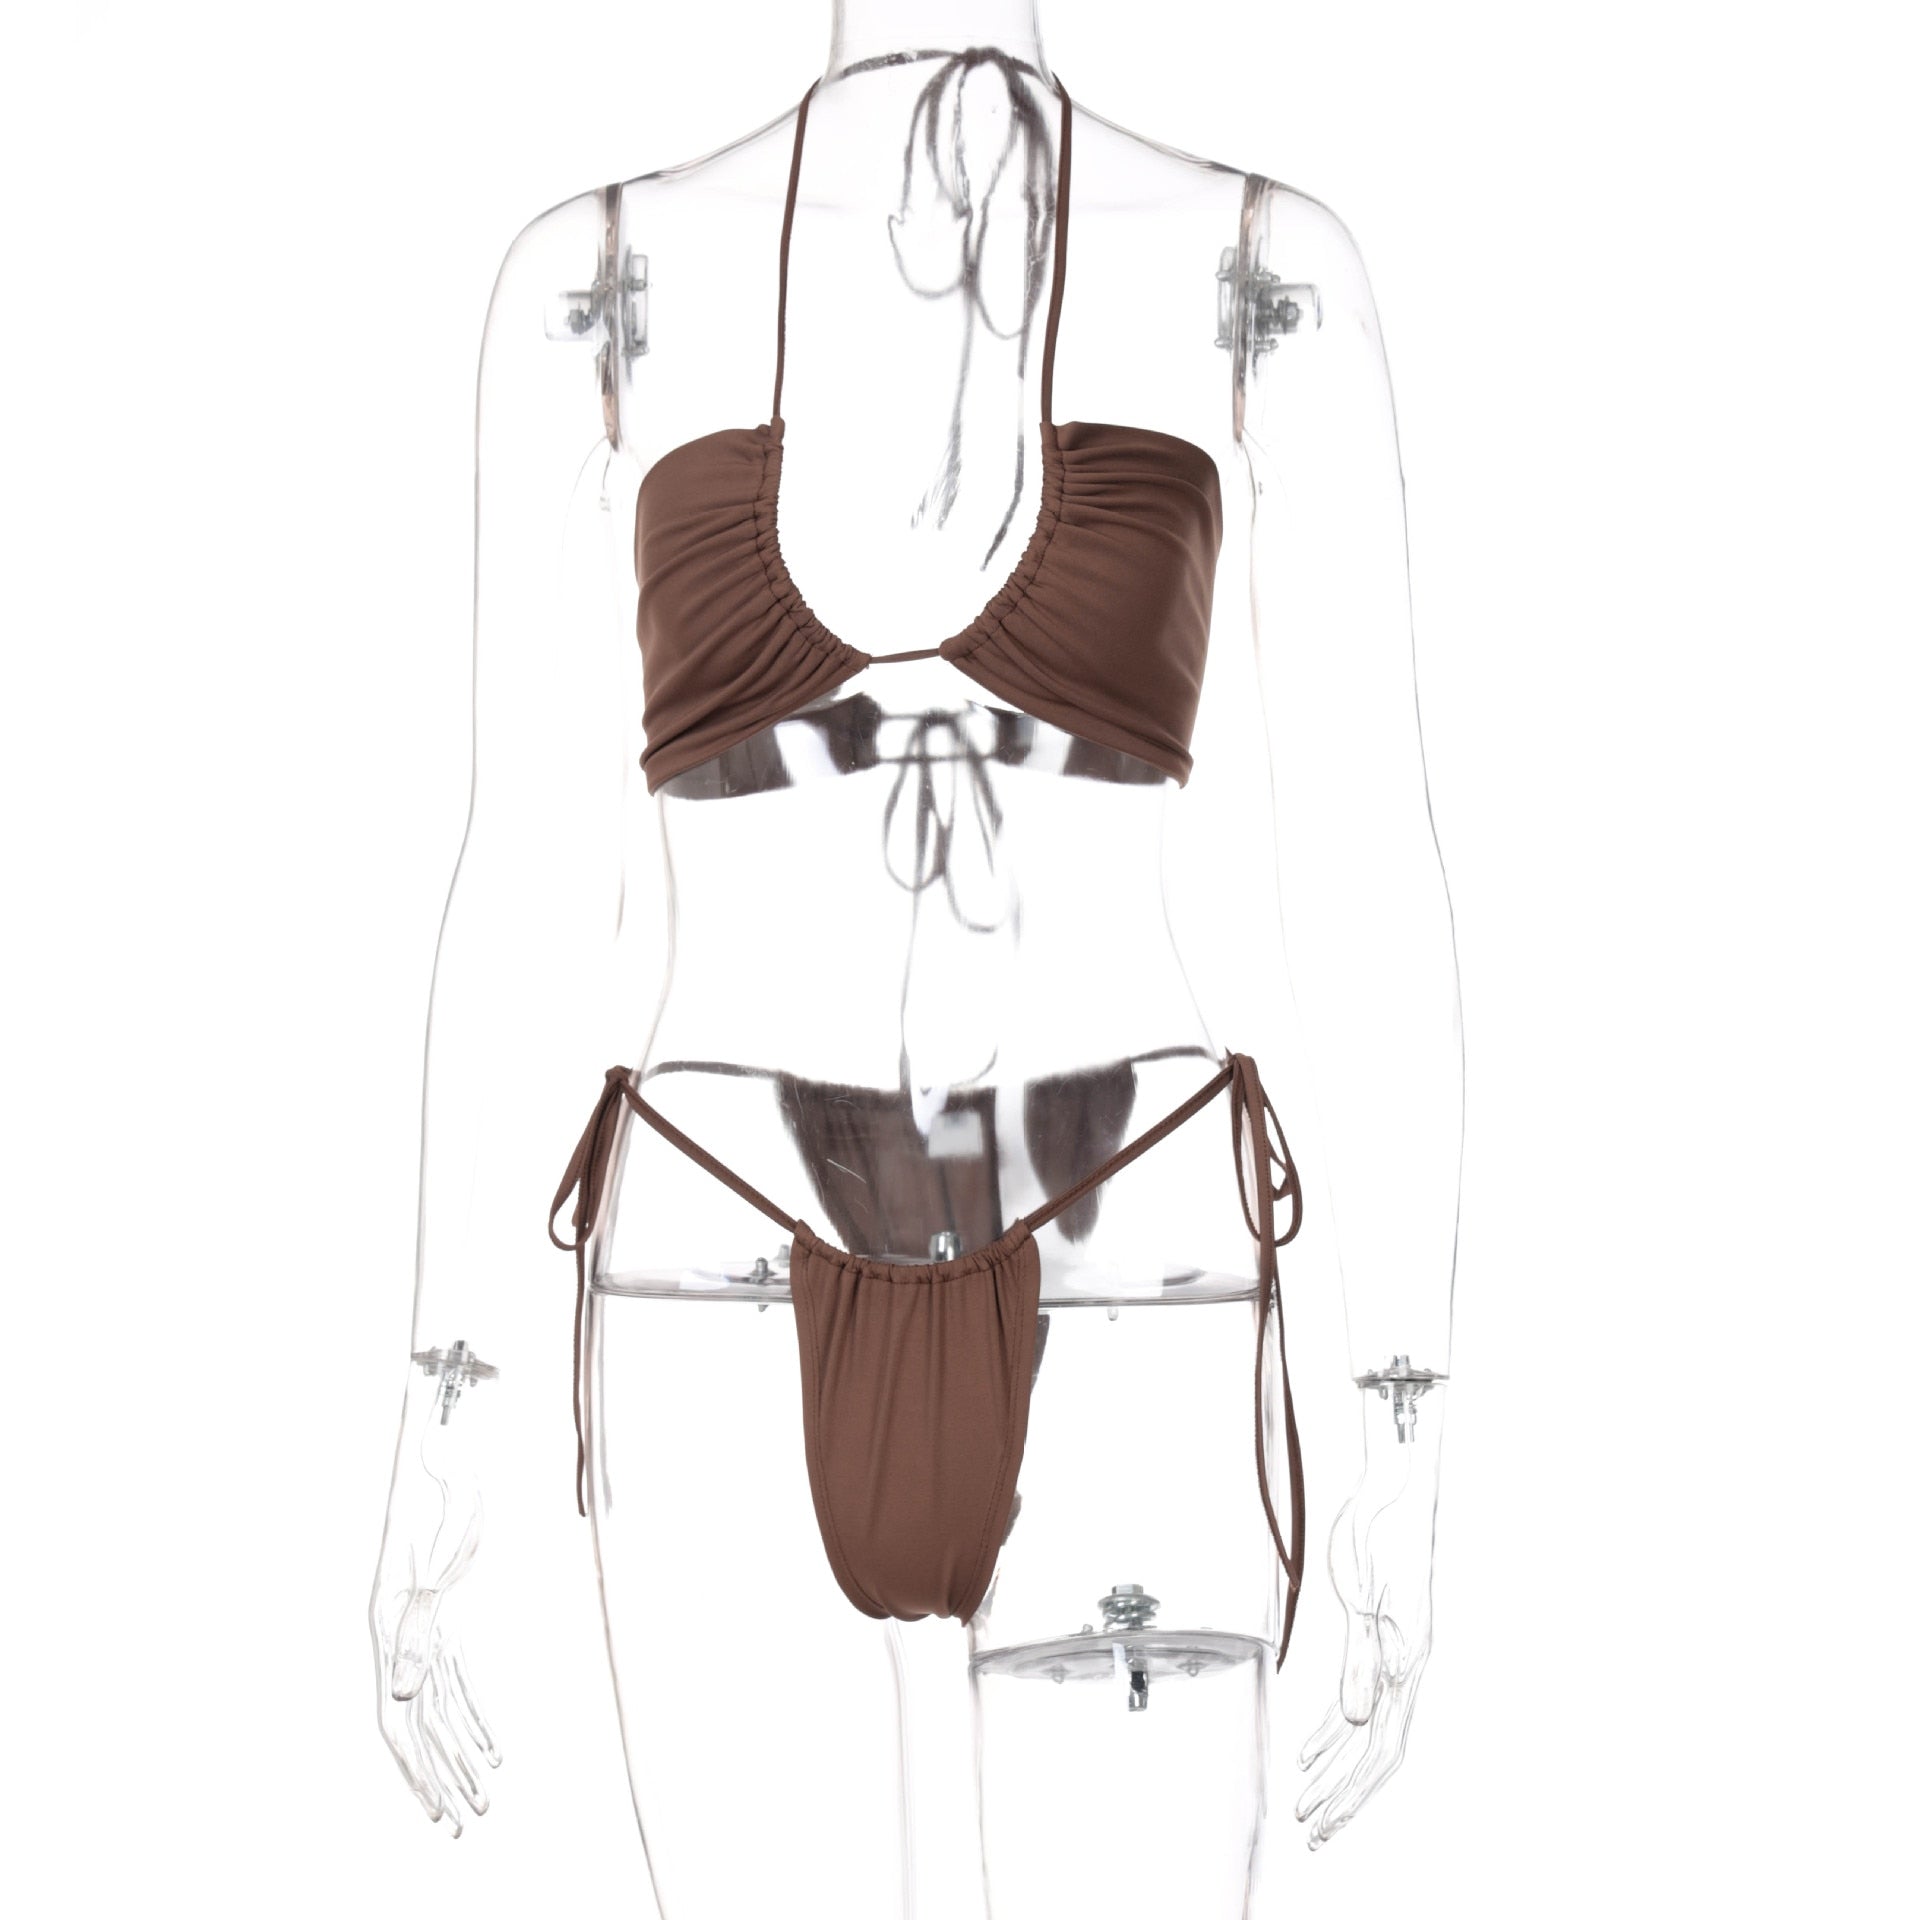 Modefest- Brauner String-Bikini, 2-teiliges Set, Damen, sexy Strand-Outfit, Badeanzug, freie Größe